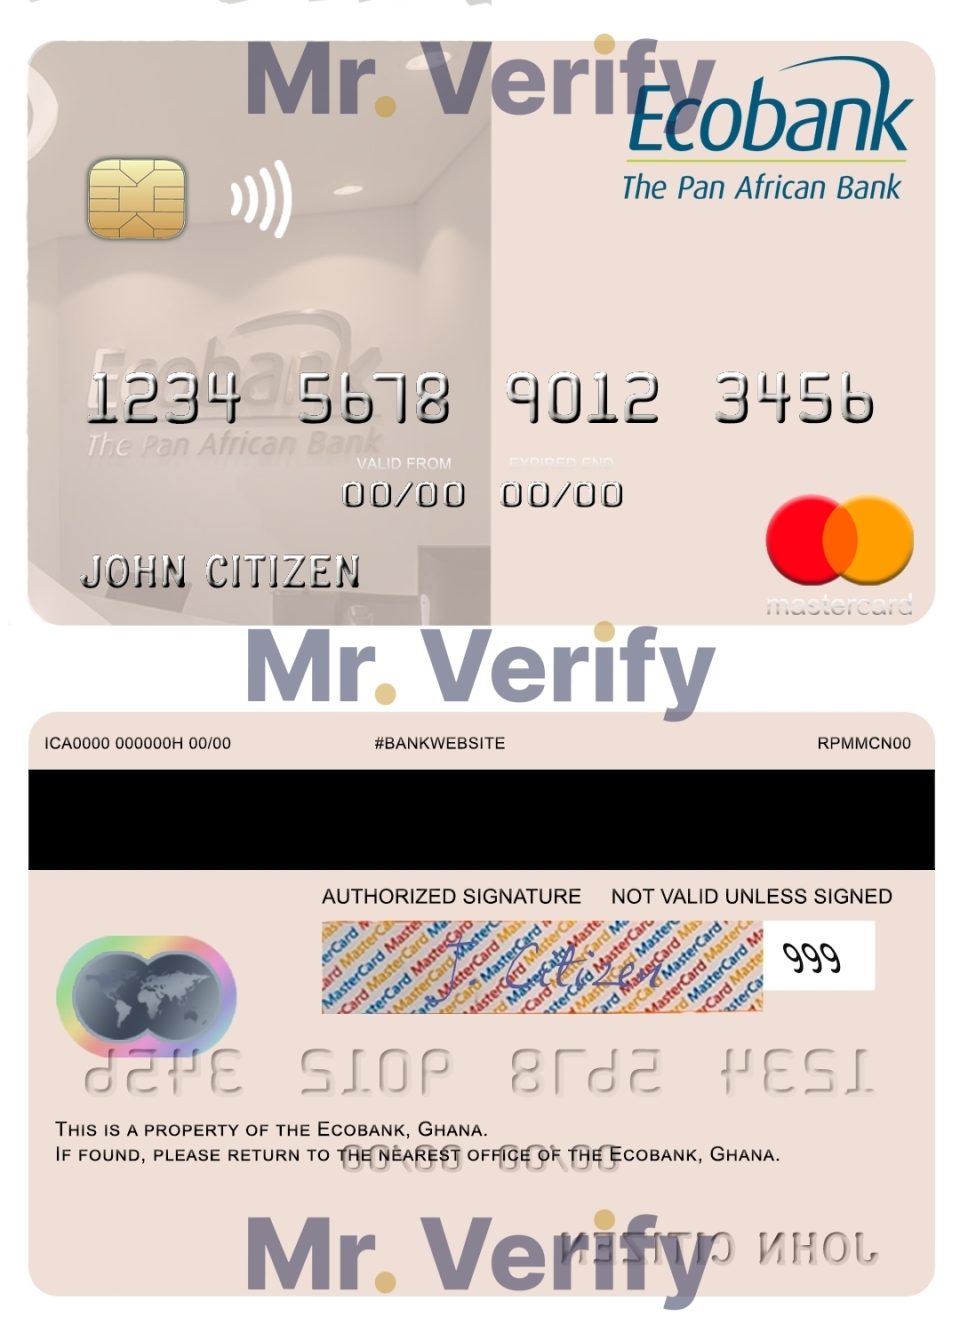 Editable Ghana Ecobank Ghana mastercard Templates in PSD Format